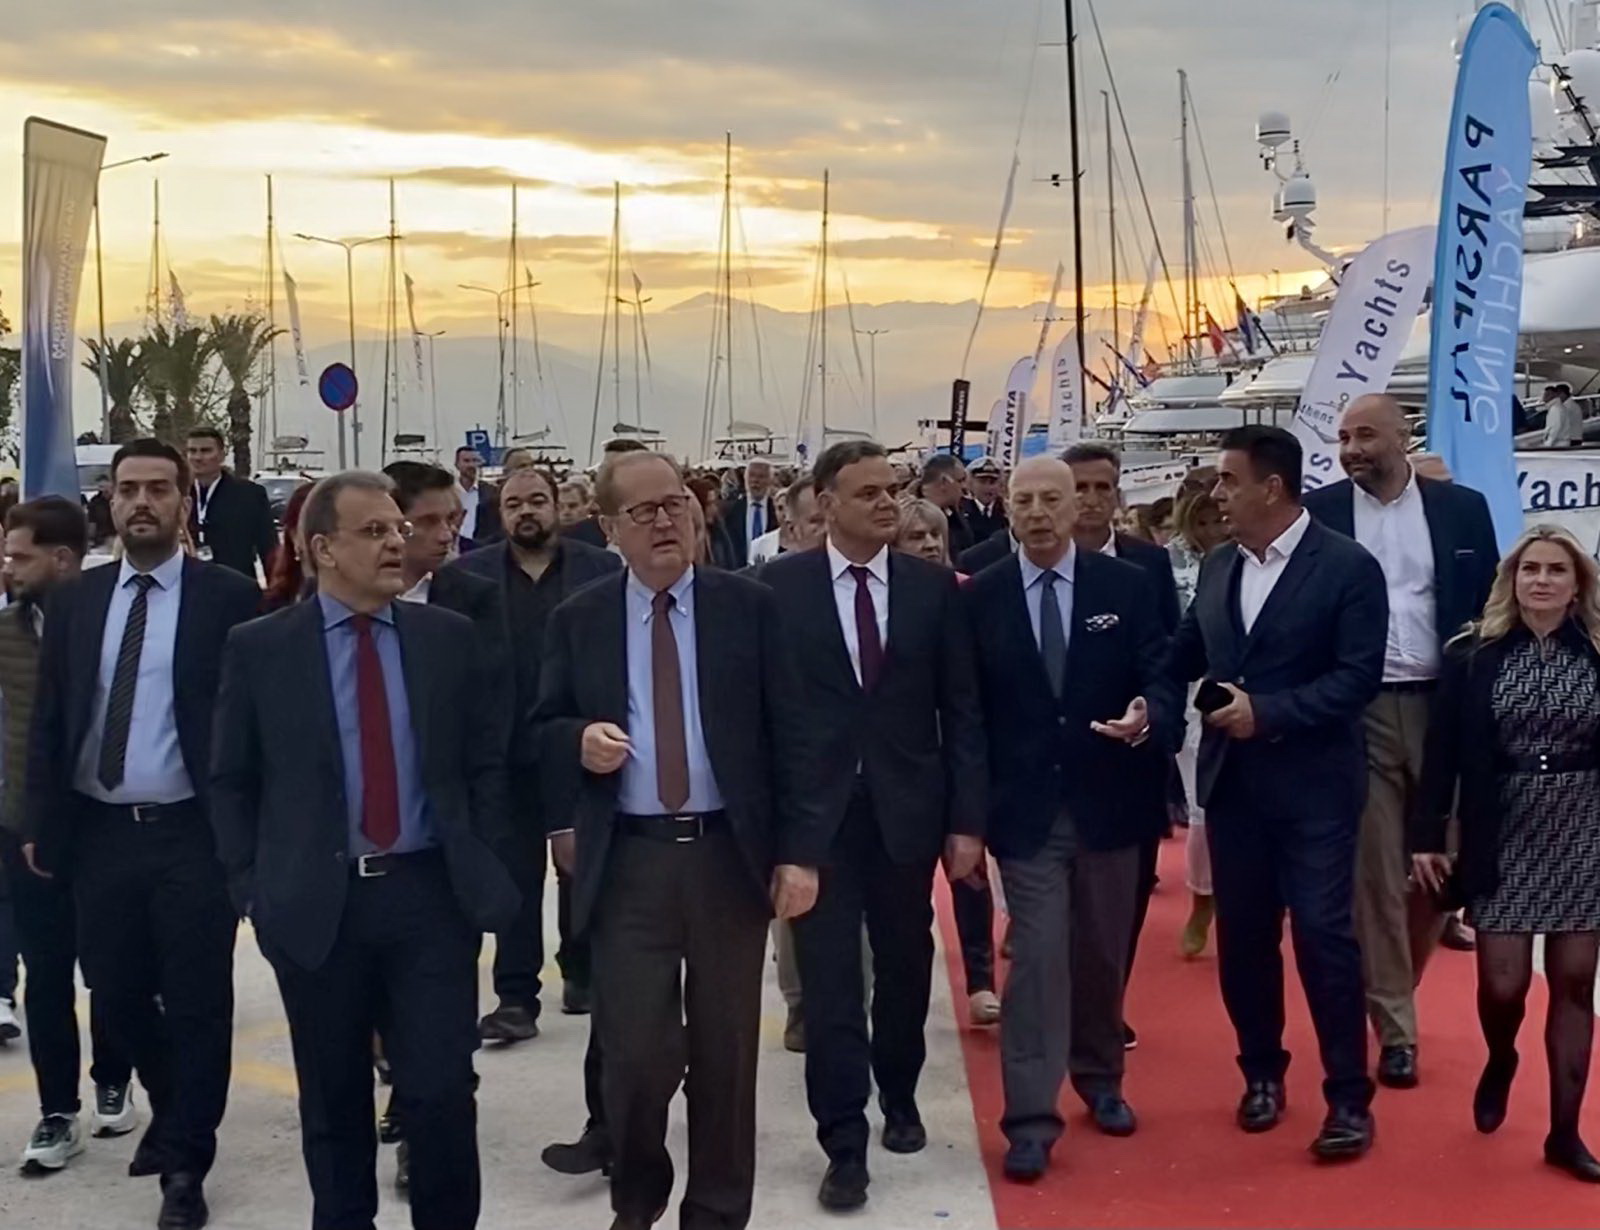 Ο περιφερειάρχης Πελοποννήσου Π. Νίκας παρέστη χθες Σάββατο, στο Ναύπλιο, στην έναρξη του 8oυ Mediterranean Yacht Show και στα εγκαίνια της 2ης έκθεσης τοπικών προϊόντων